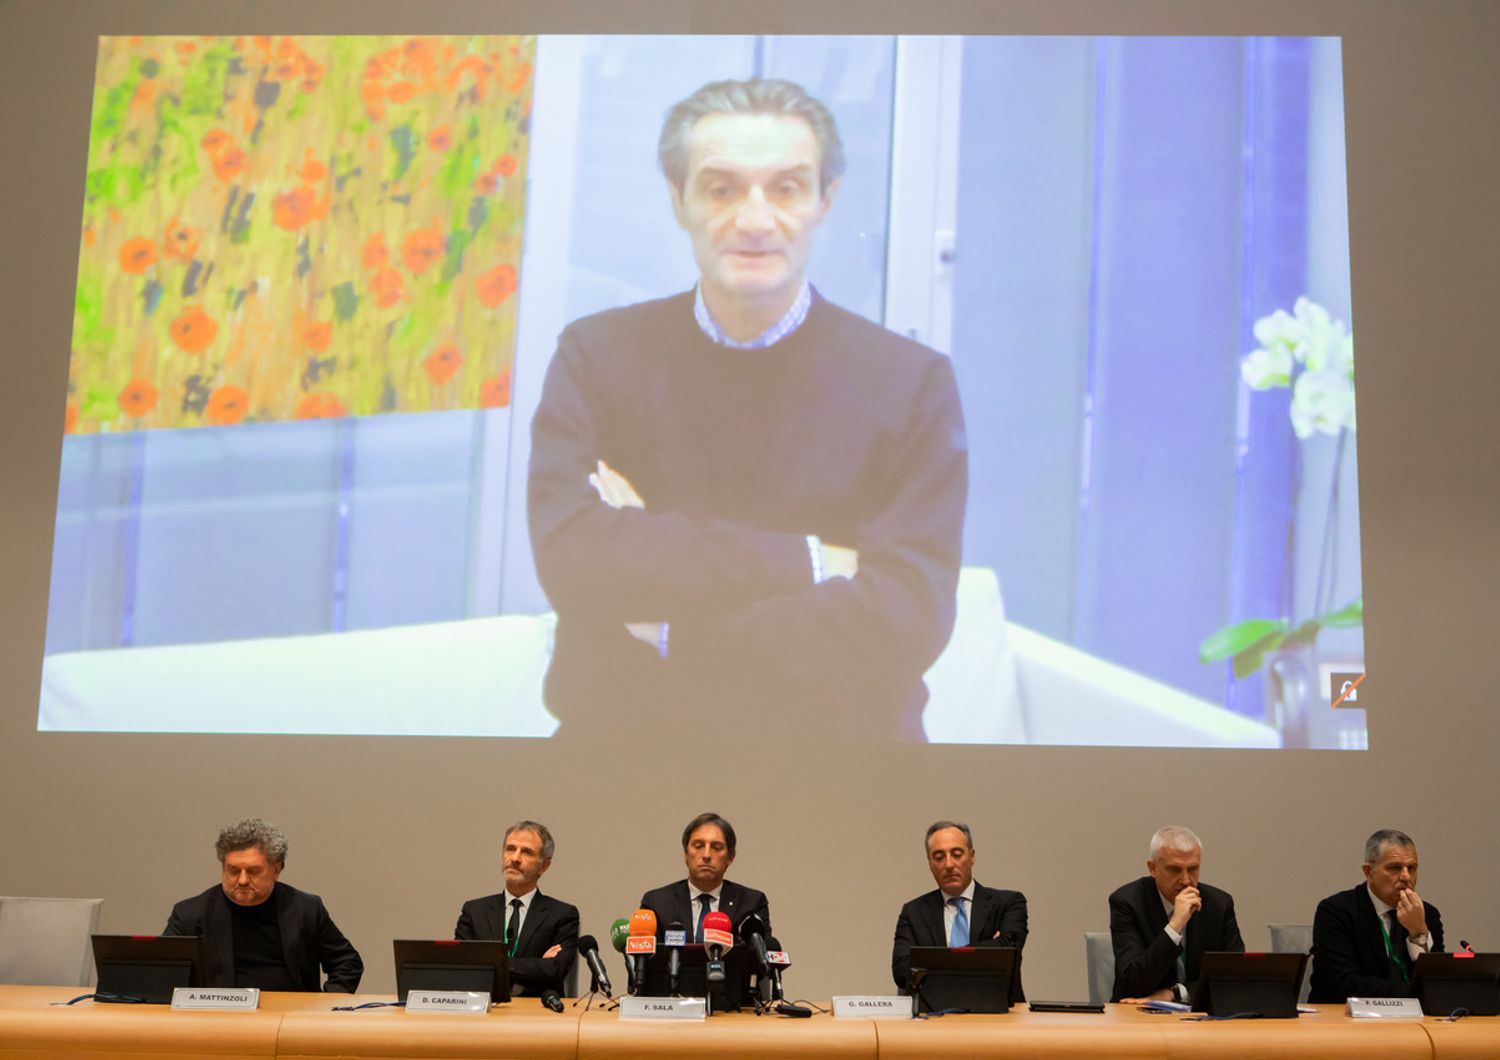 Conferenza stampa in Regione Lombardia: il presidente Attilio Fontana partecipa in videoconferenza da isolamento volontario&nbsp;